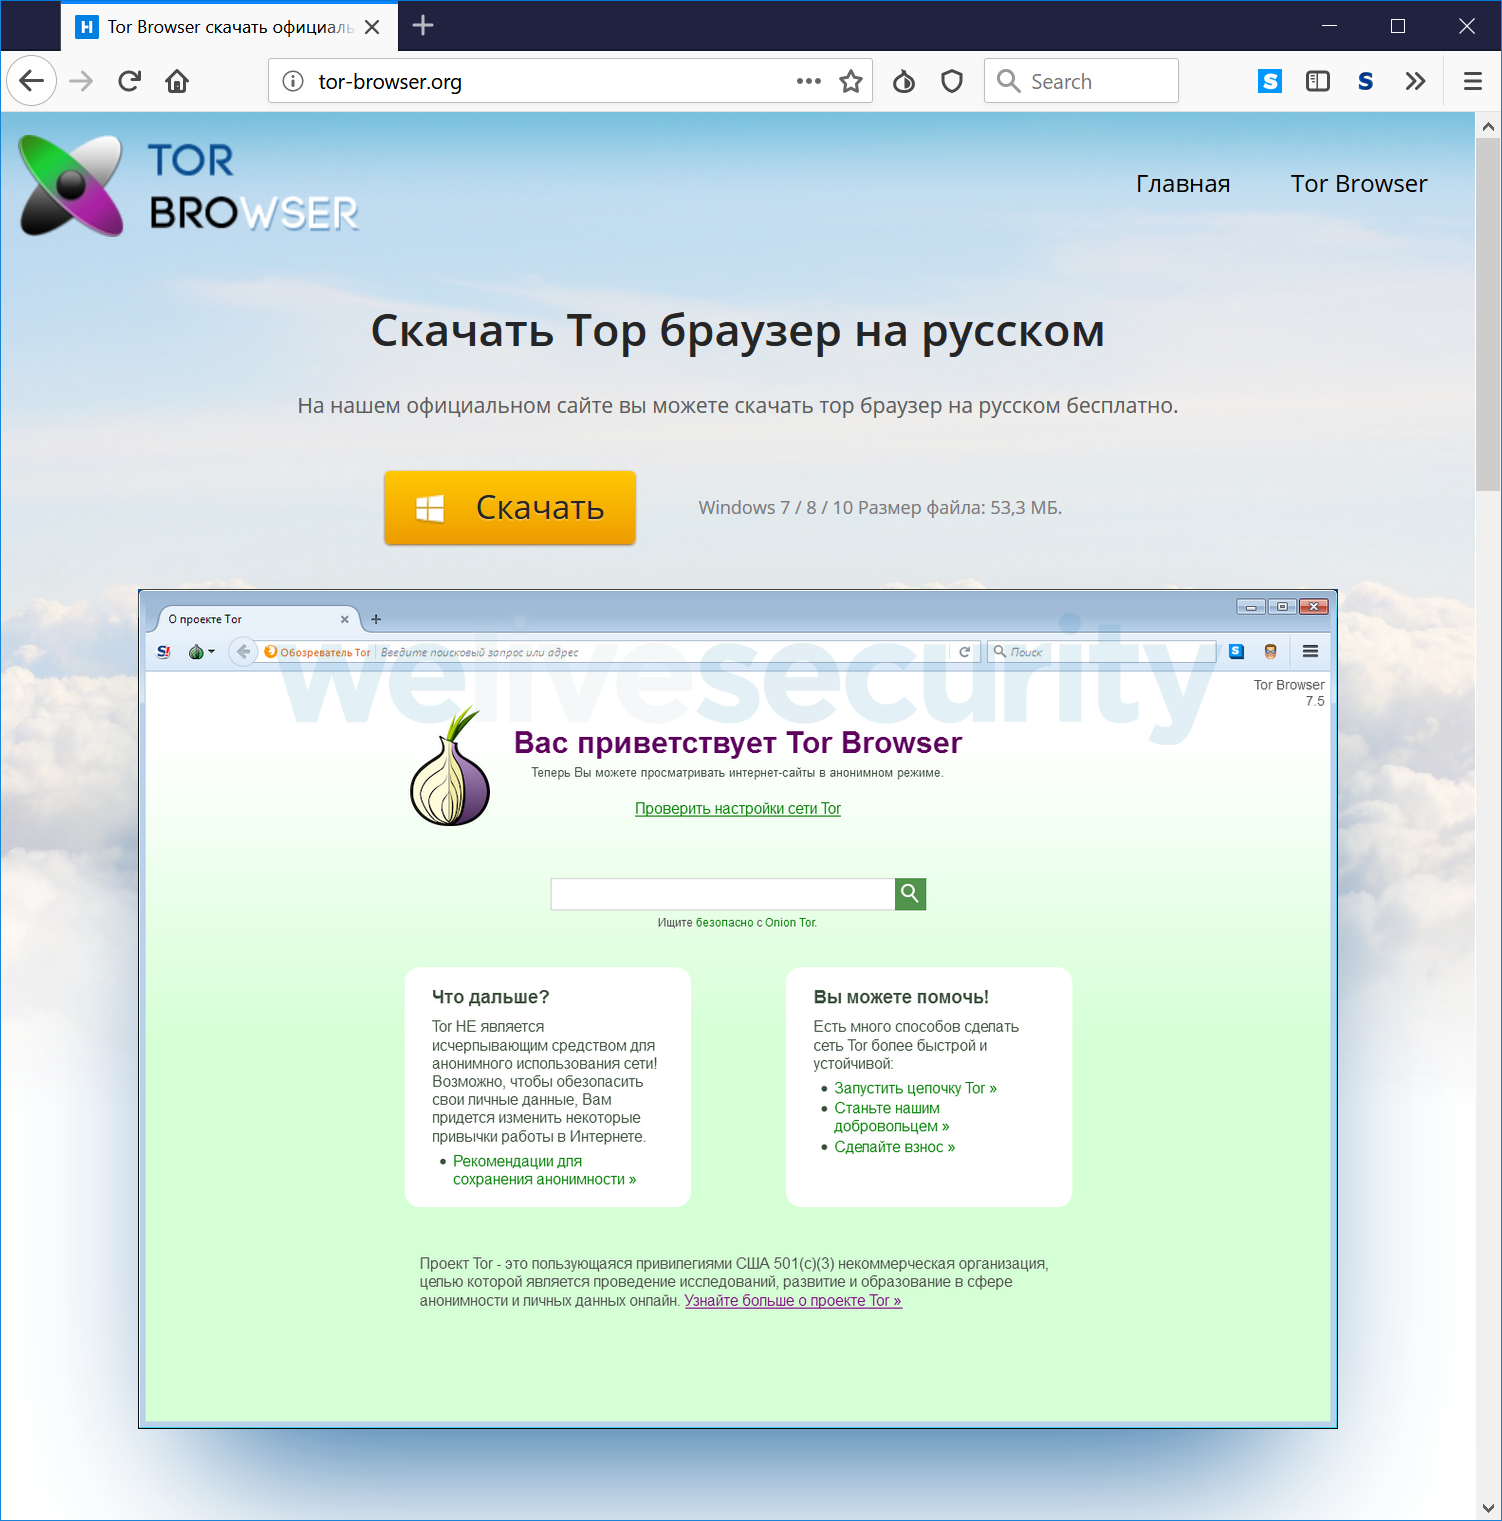 Браузер типа тор скачать даркнет2web тор браузер скачать бесплатно на русском на телефон даркнет